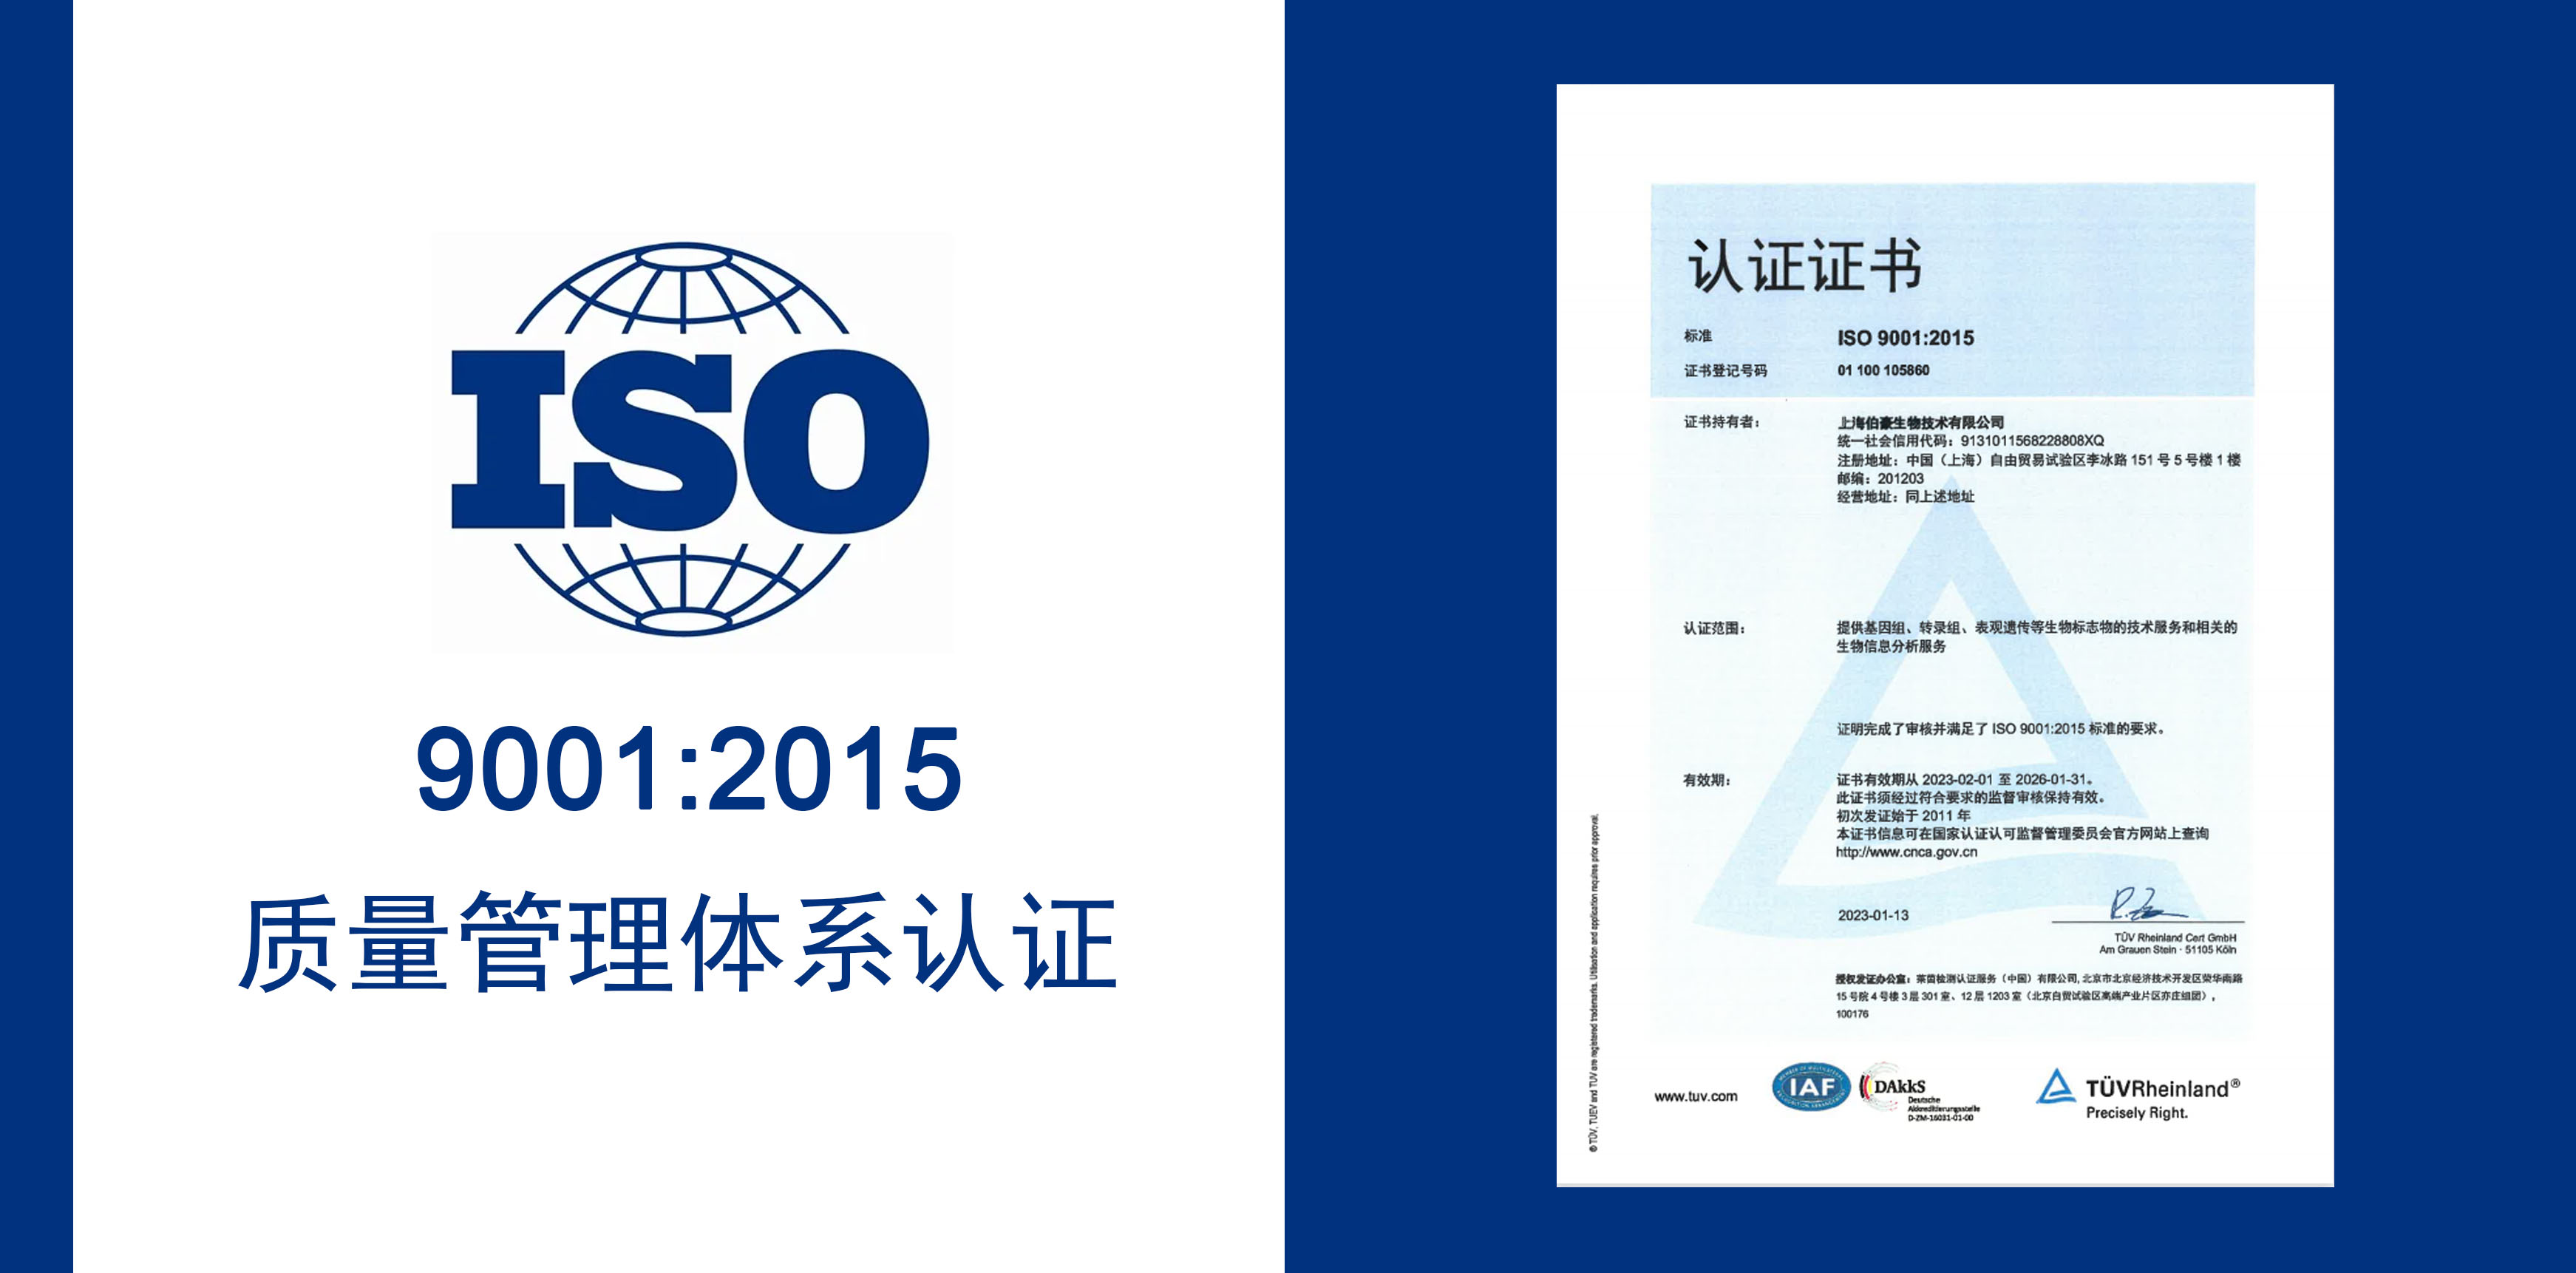 澳门太阳集团官网获得 IOS9001 质量服务体系认证